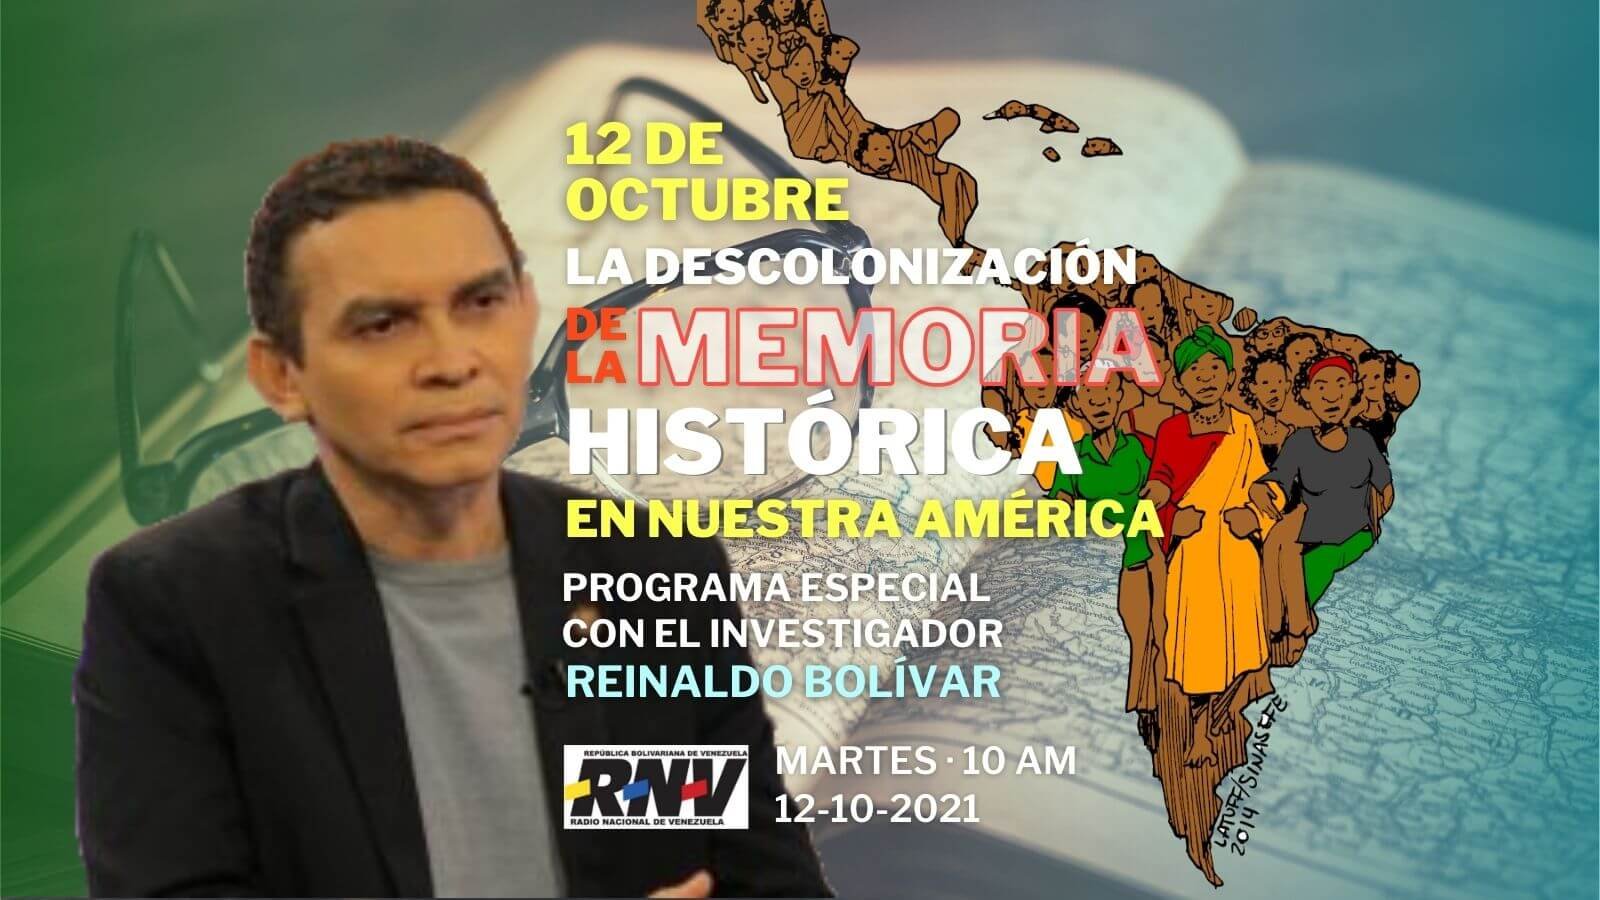 Reinaldo Bolívar y la descolonización de la memoria en Nuestra América